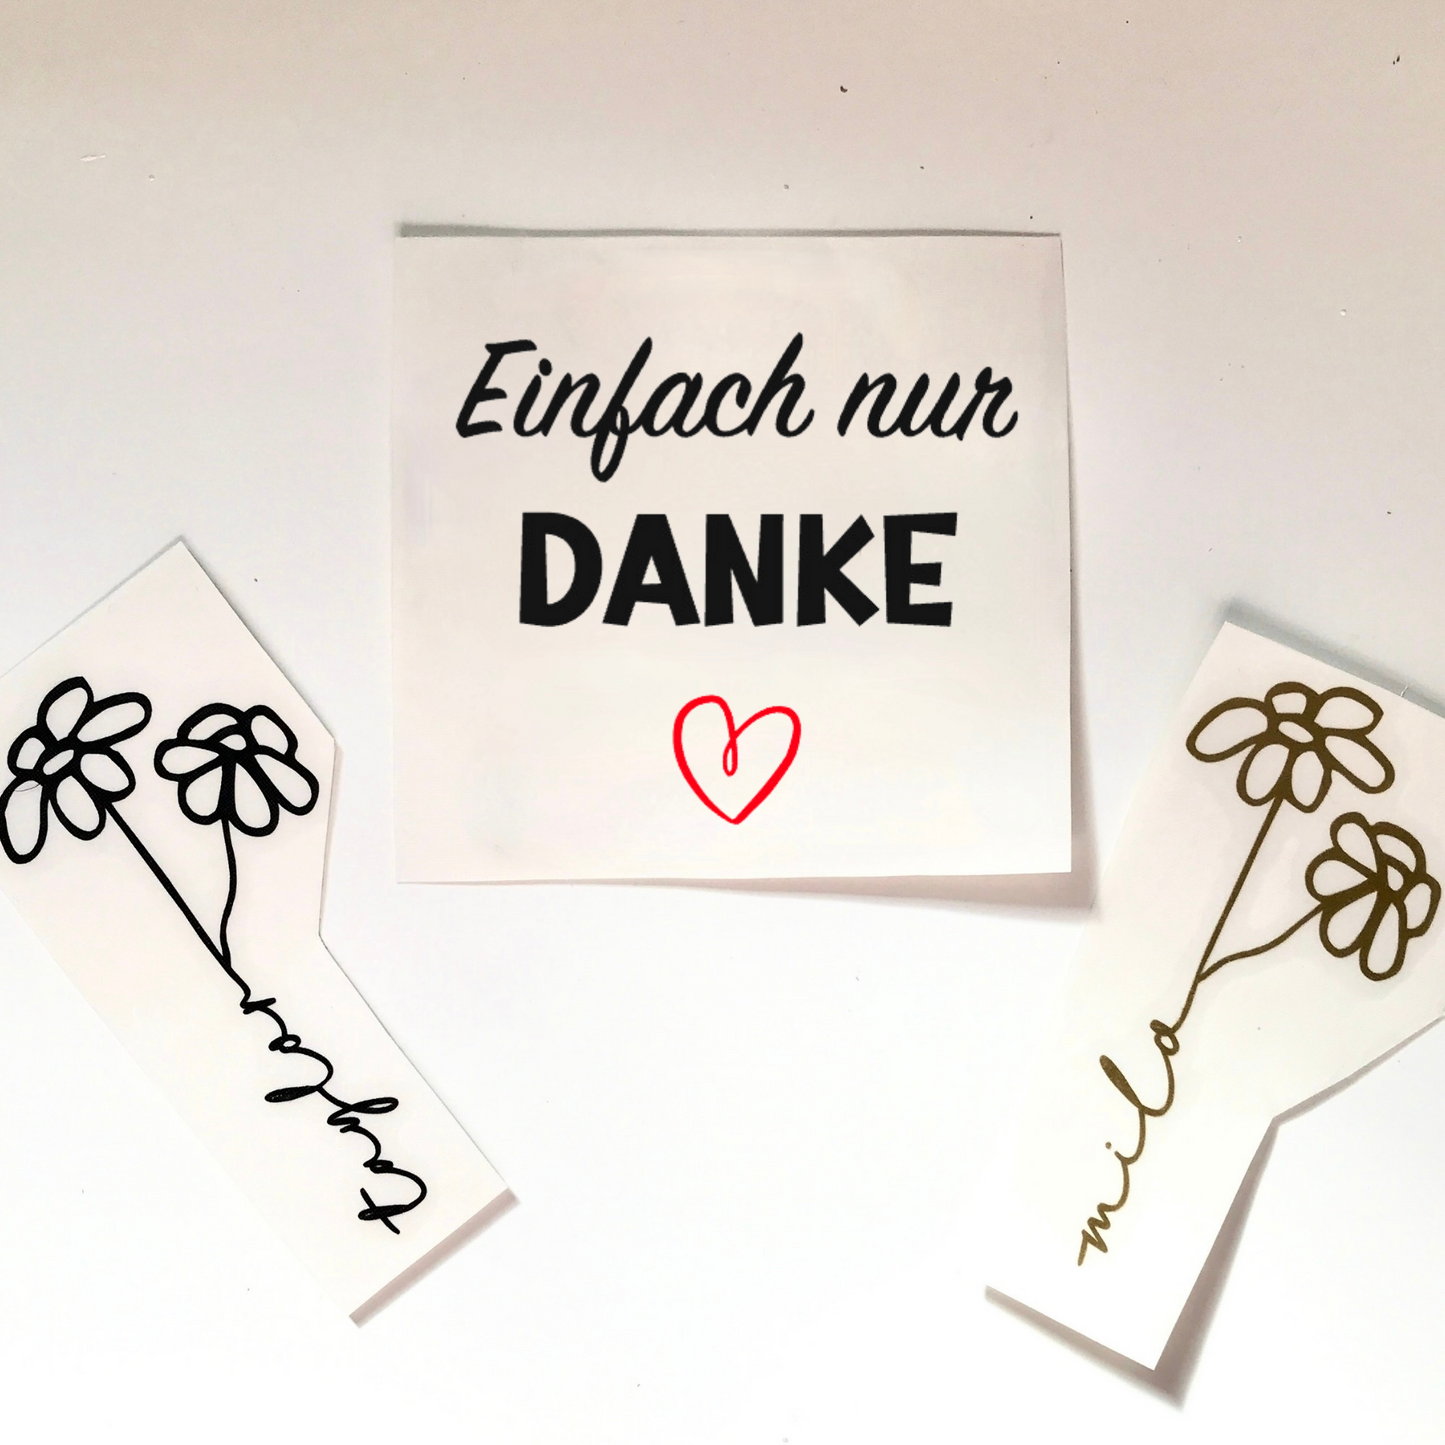 Aufkleber zum Danke sagen - DIY Aufkleber - DIY Geschenkidee - Sticker zum Bedanken - personalisiert